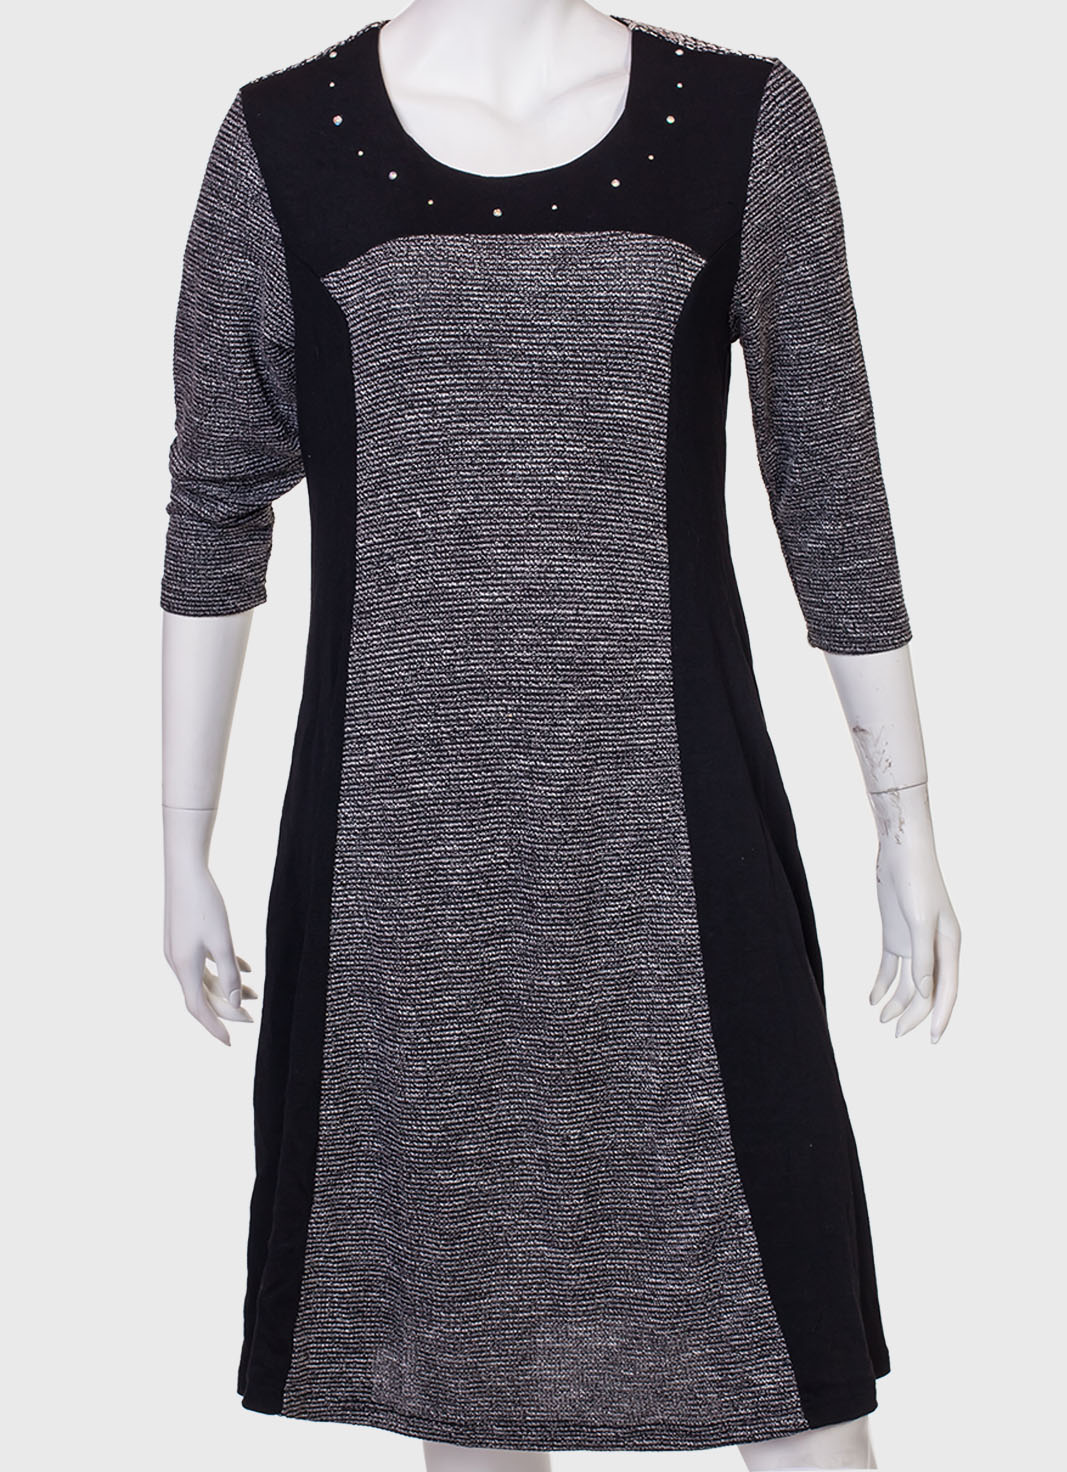 Строгое платье комбинированного пошива  от бренда Marie Claire - купить по экономичной цене